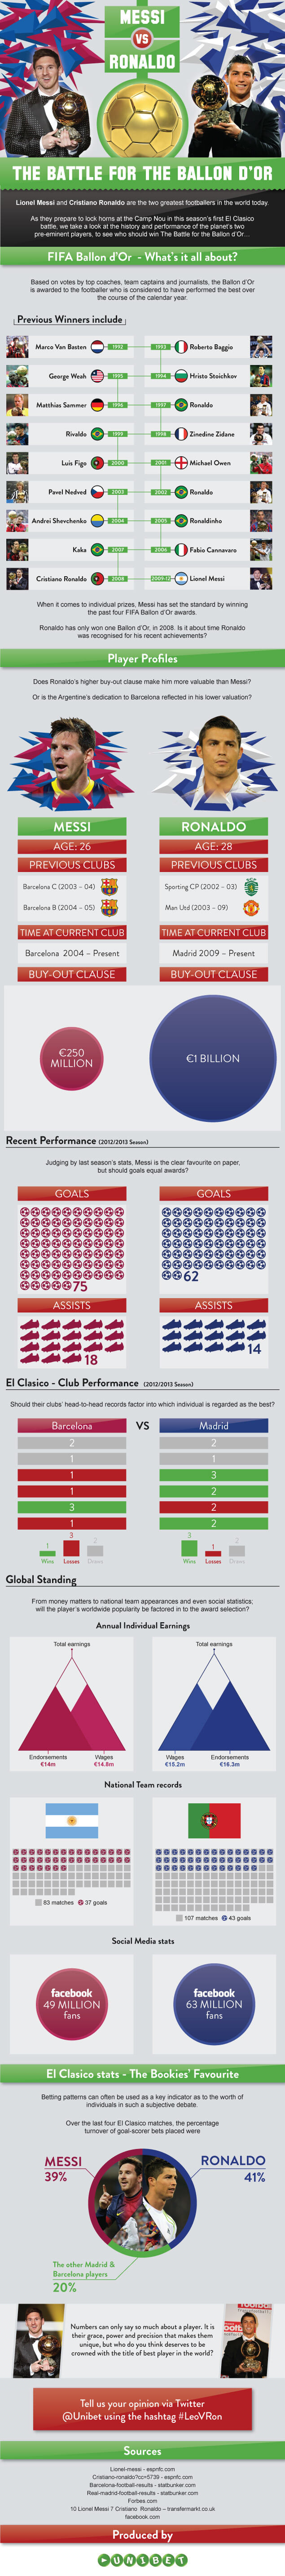 El Clasico: Lionel Messi vs Cristiano Ronaldo Infographic